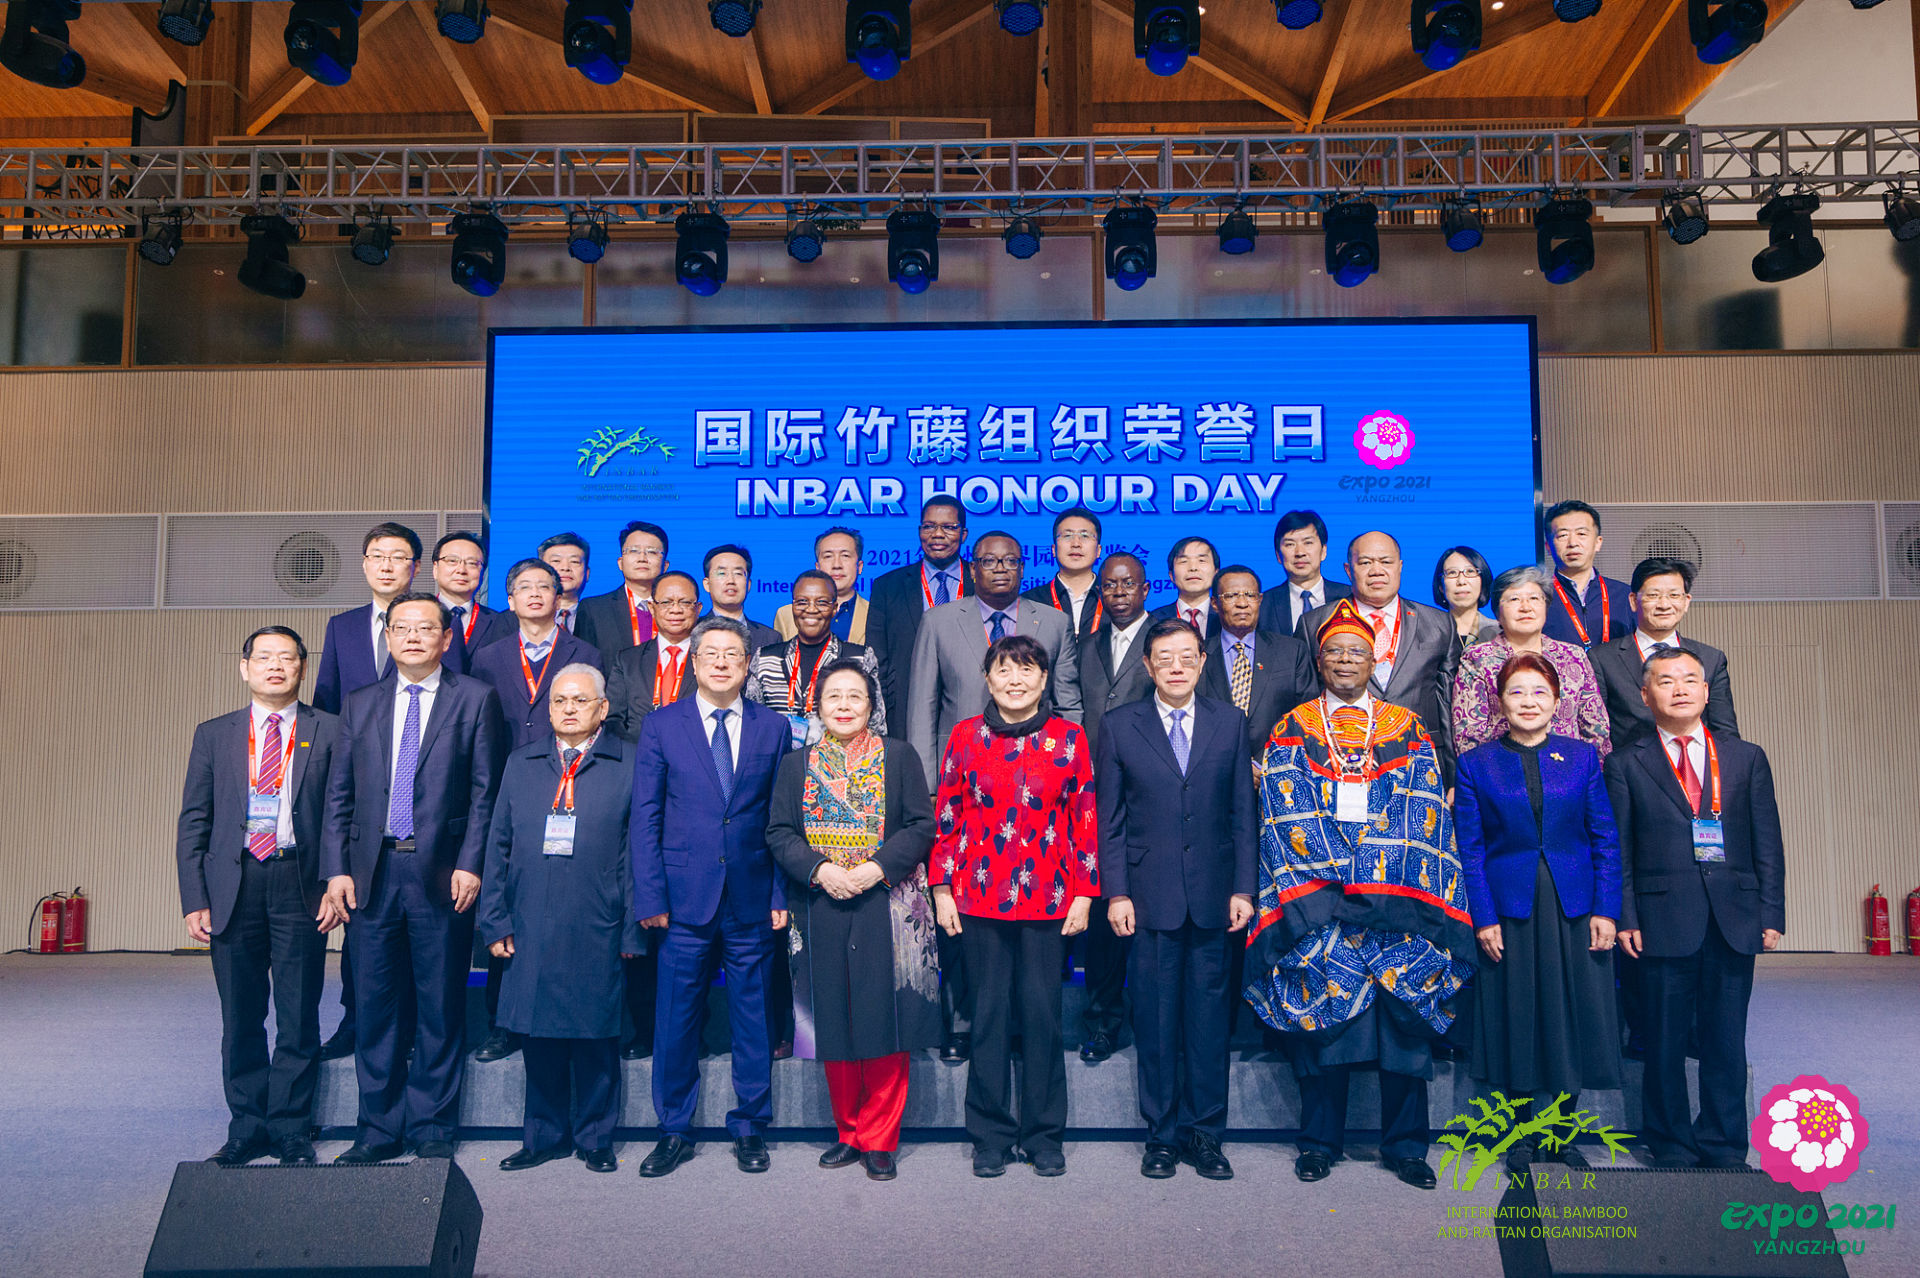 国际竹藤组织荣誉日活动于2021年4月8日在扬州举行